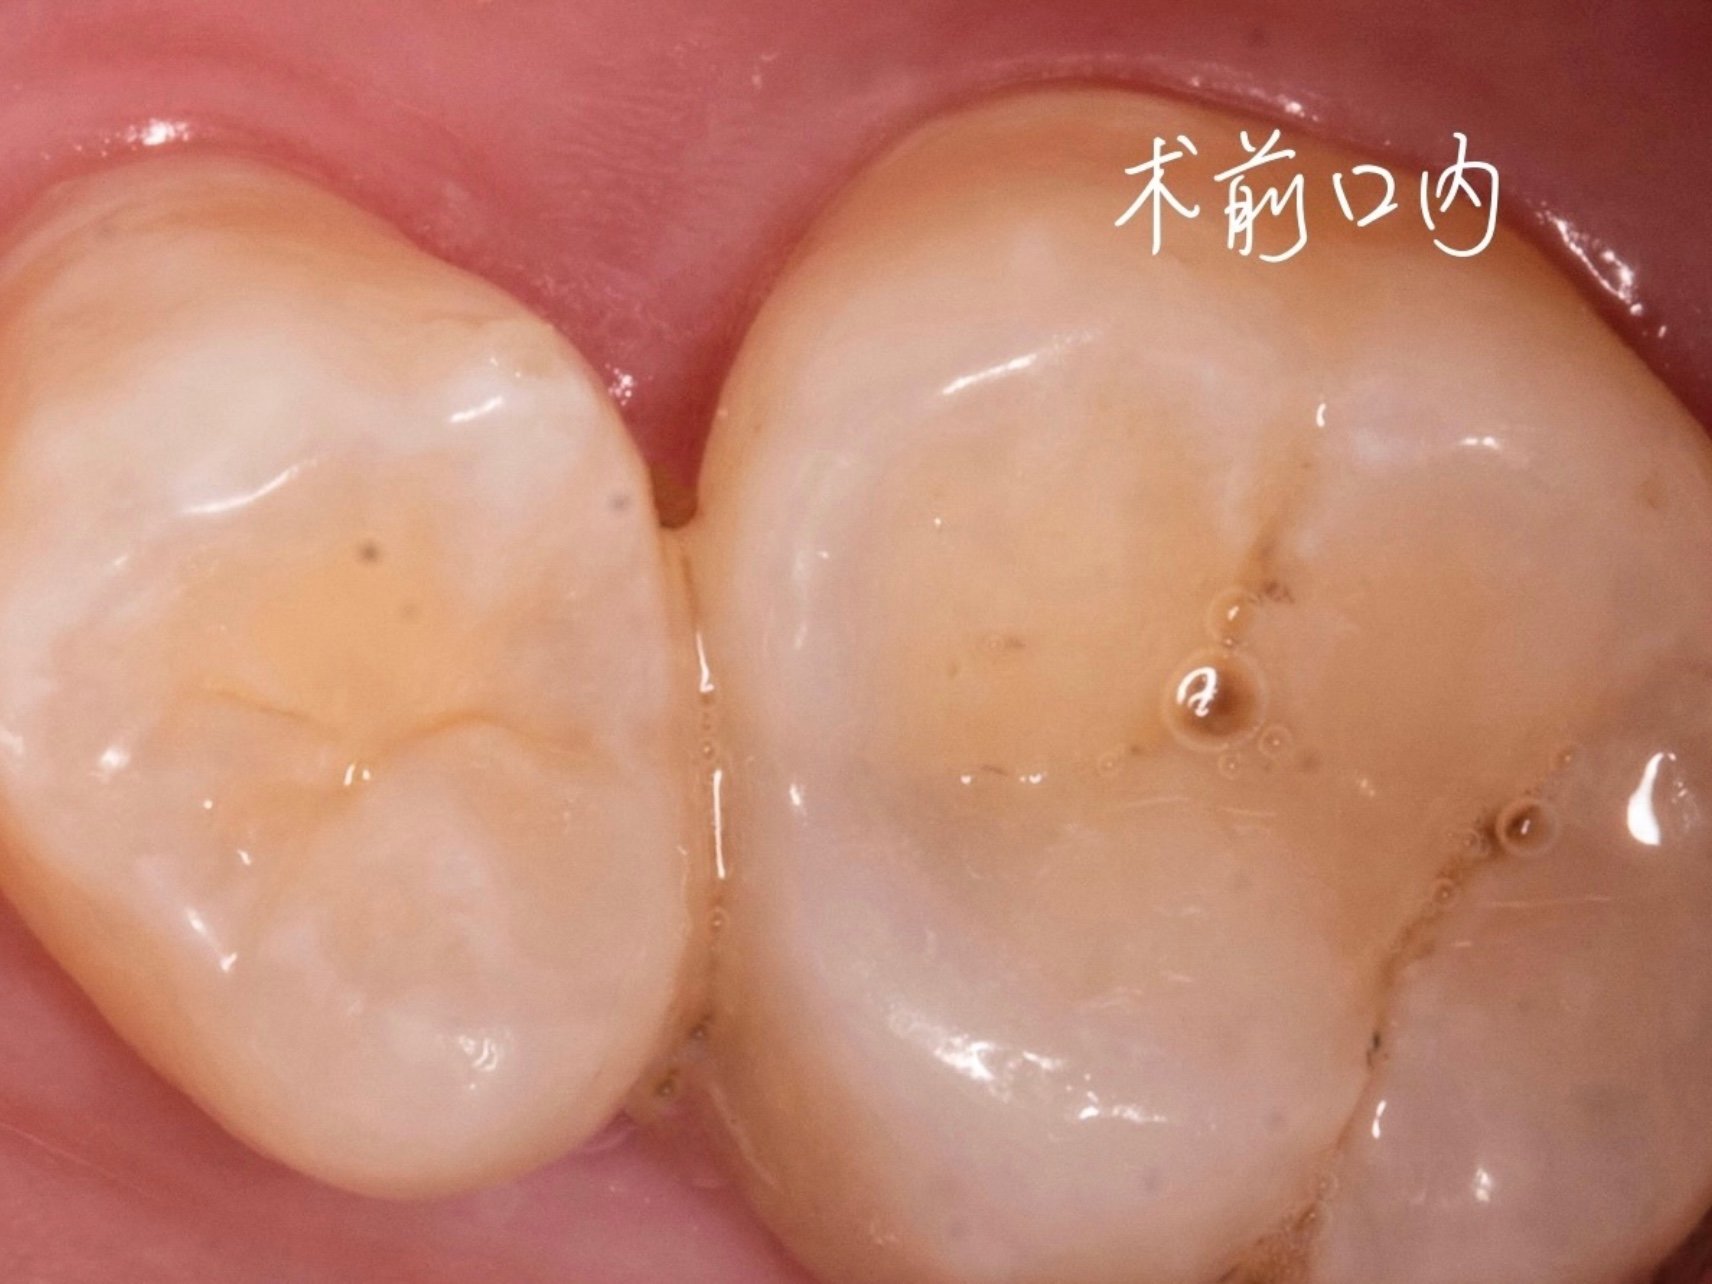 邻面龋初期龋齿比较轻微不会有疼痛不适的症状,但如果发展为牙髓炎